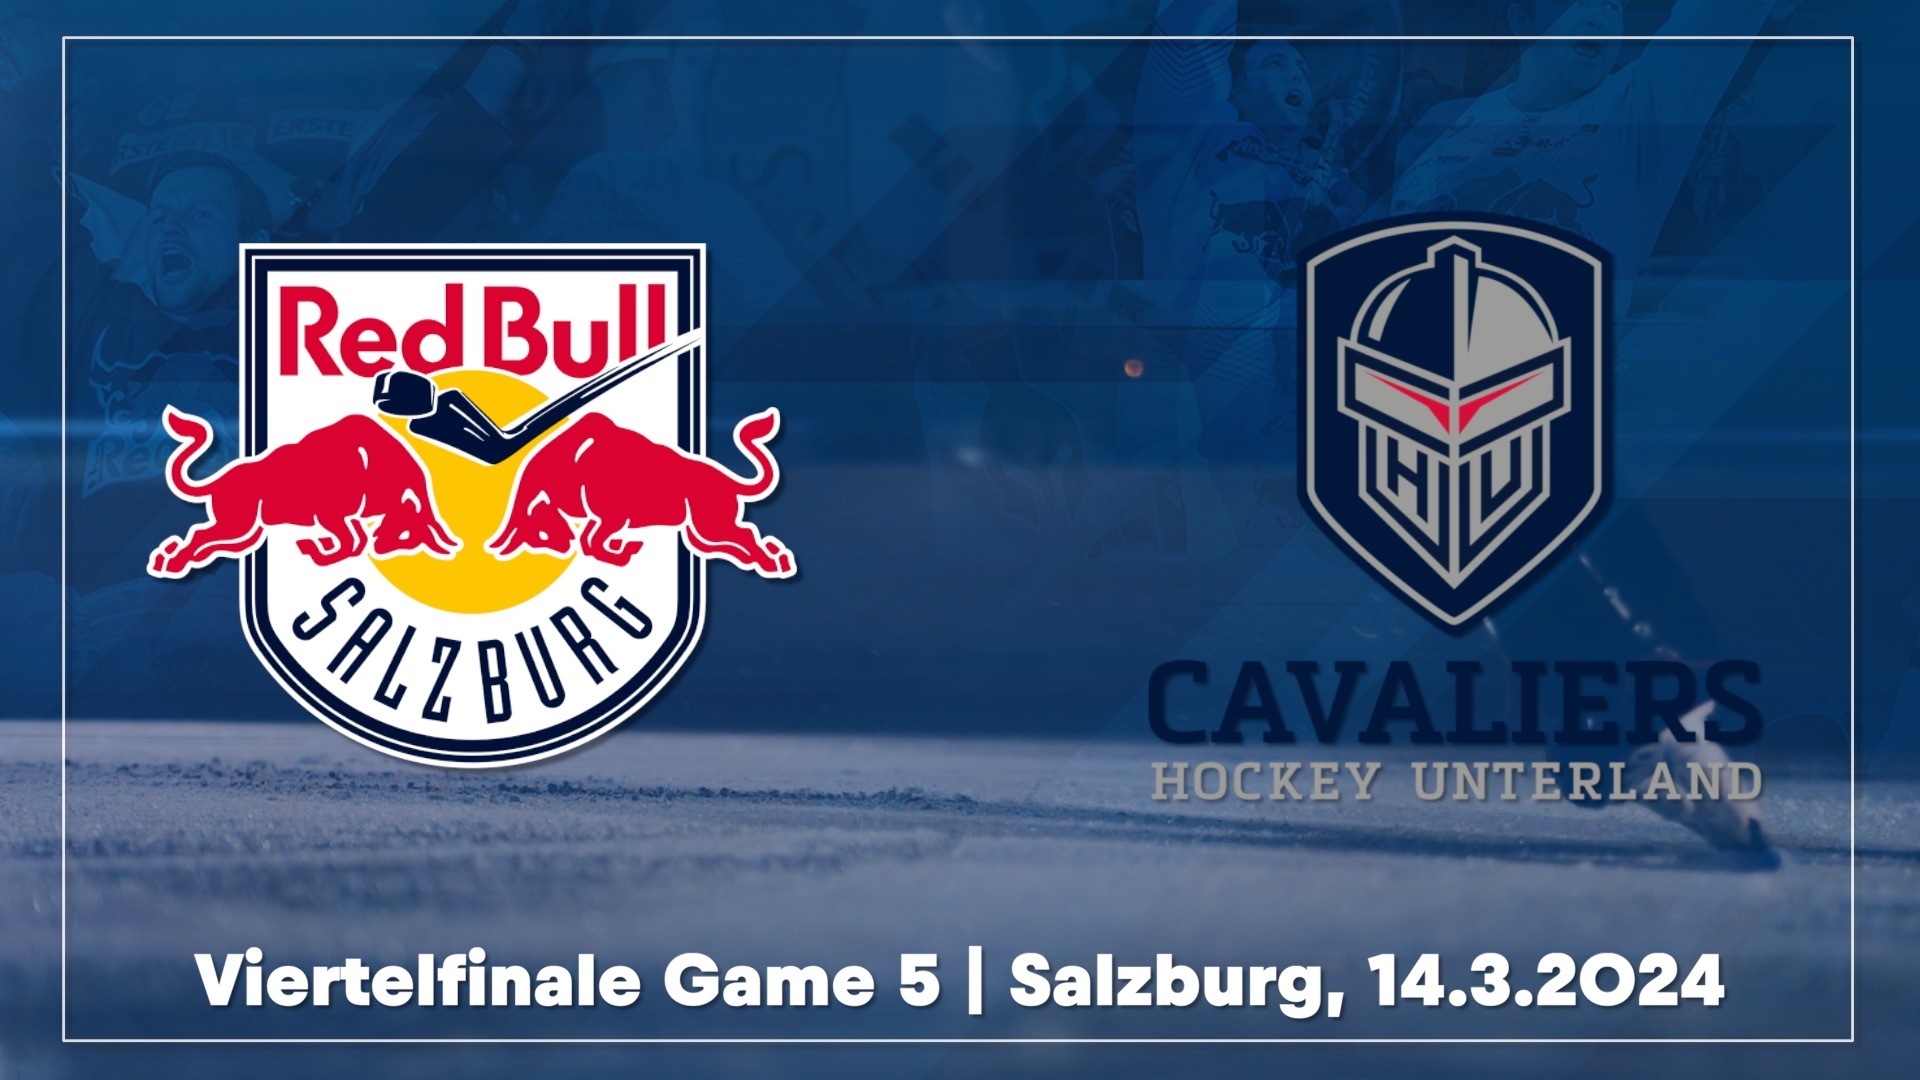 Highlights: VF5 Red Bull Hockey Juniors vs. Hockey Unterland Cavaliers